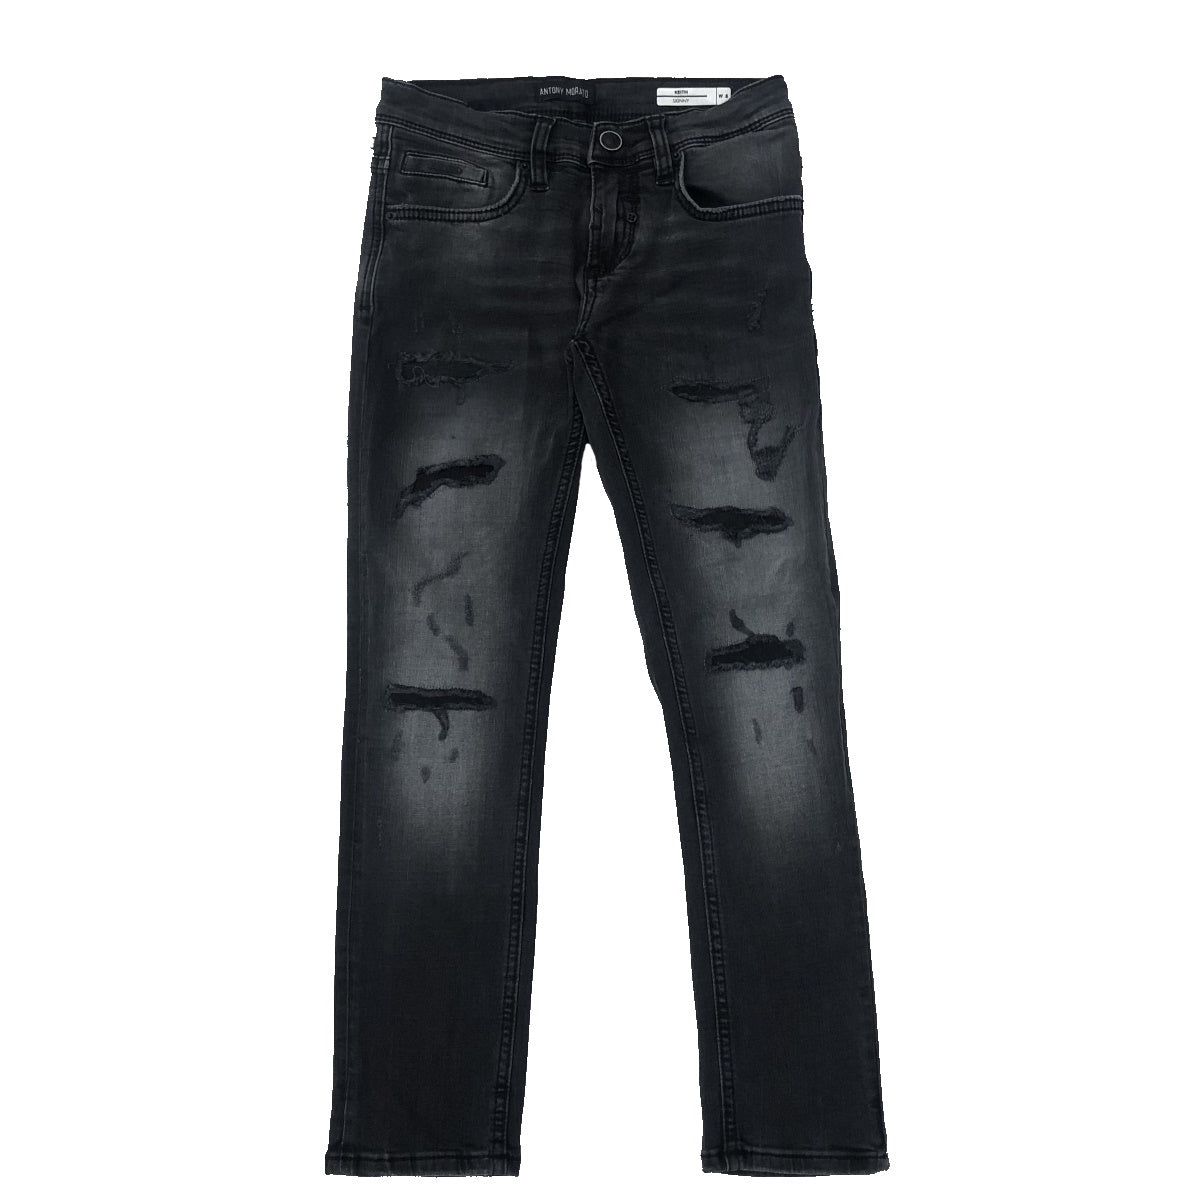 Antony Morato jeans